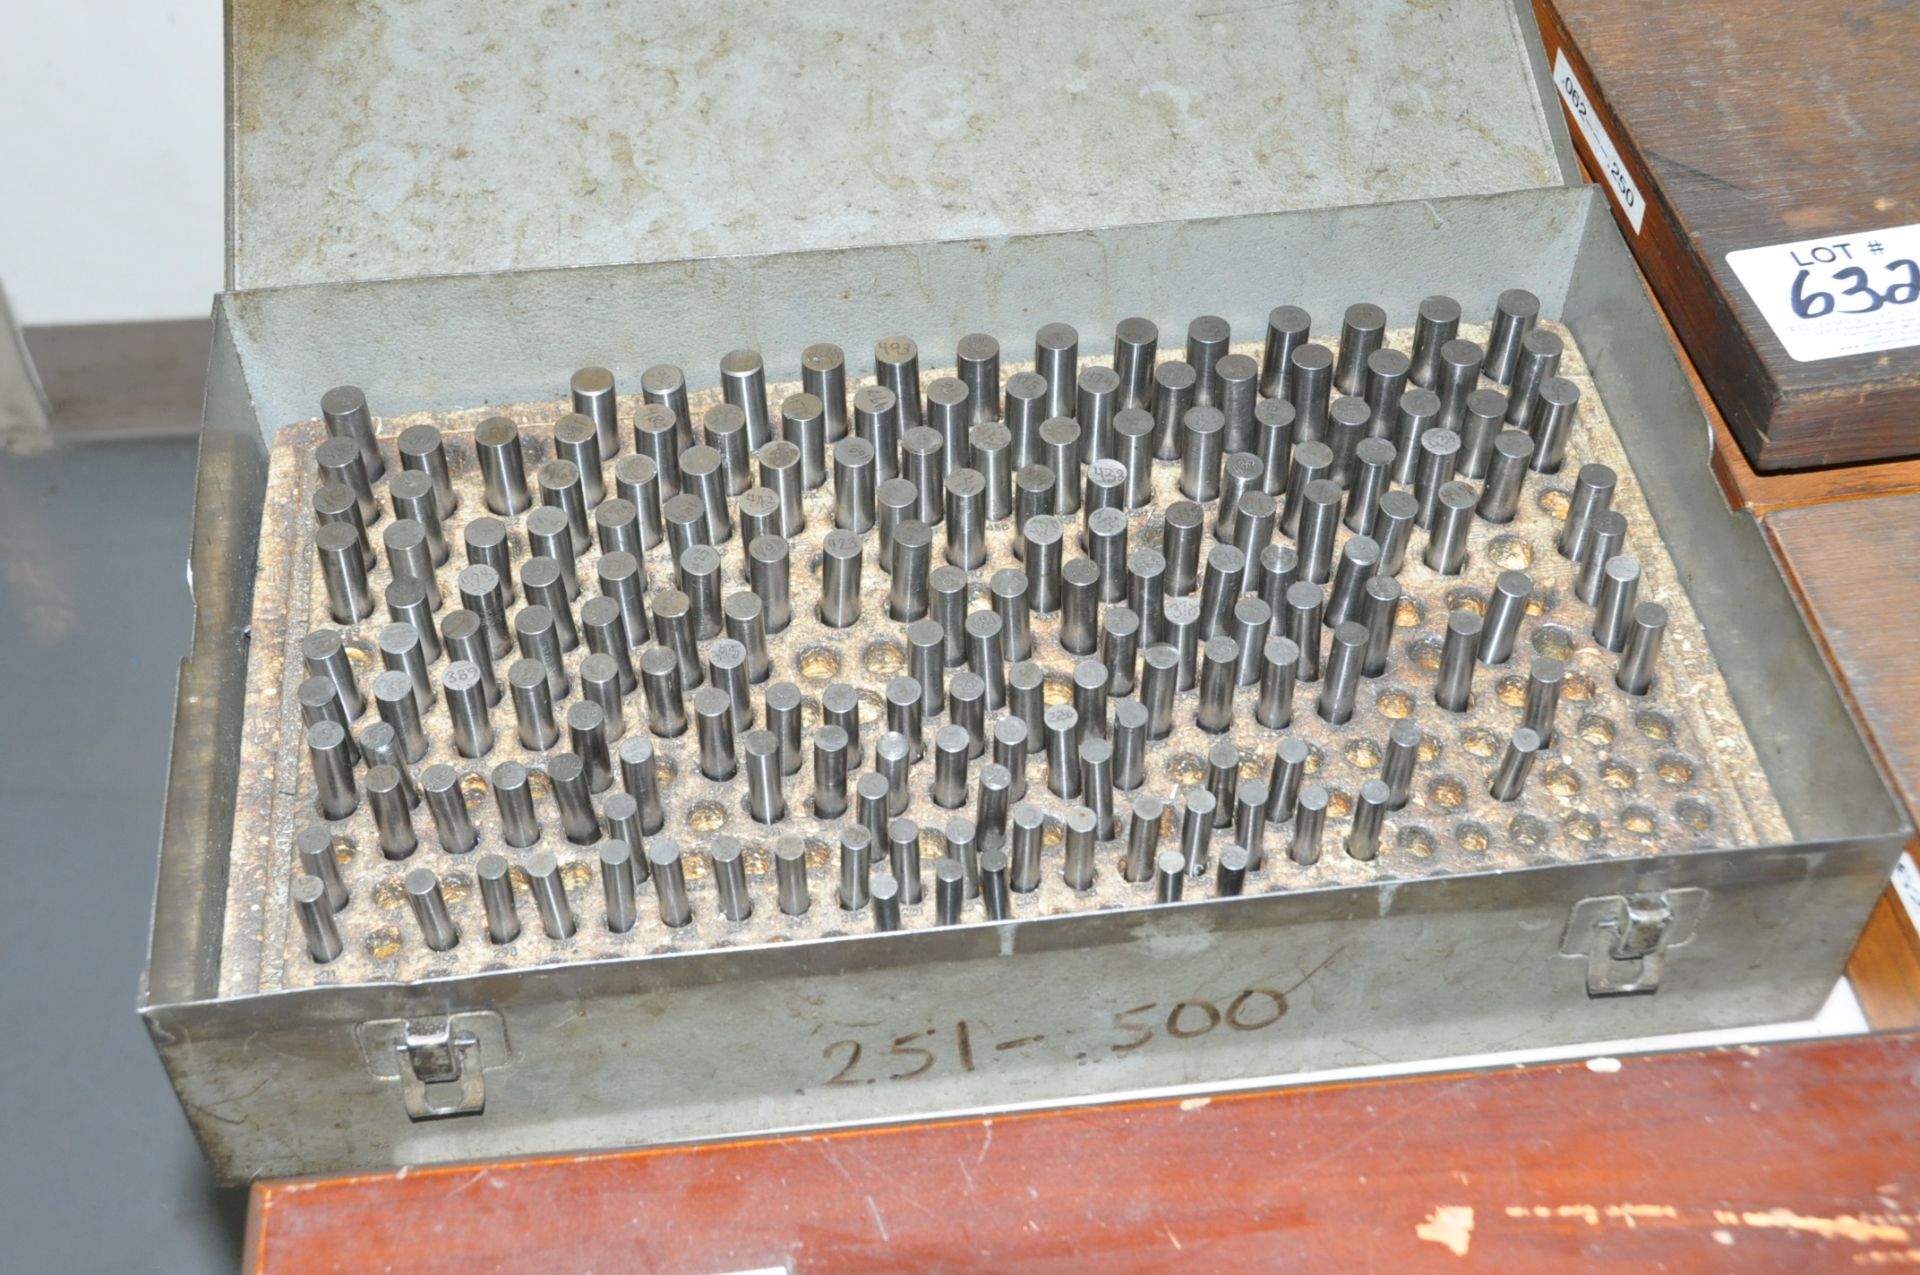 .251 - .500 Pin Gauge Set